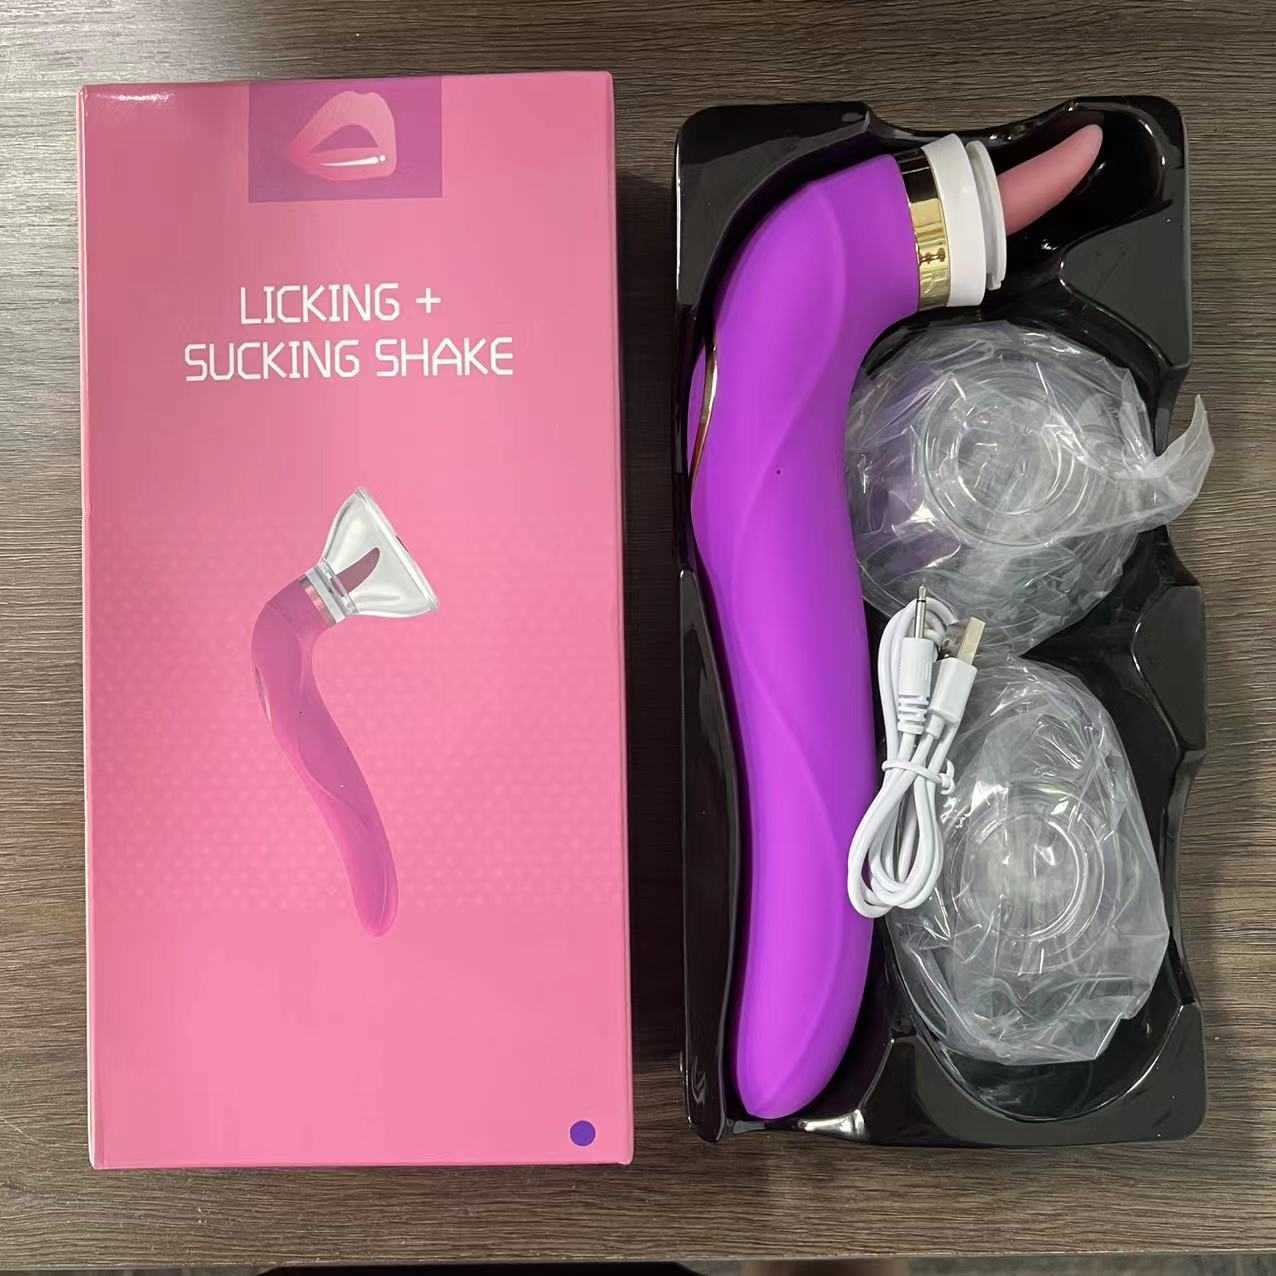 Vibrator pussy zuigen dildo seksspeeltjes voor vrouw tong likken clitoris stimulator tepel masturbator massager 0803